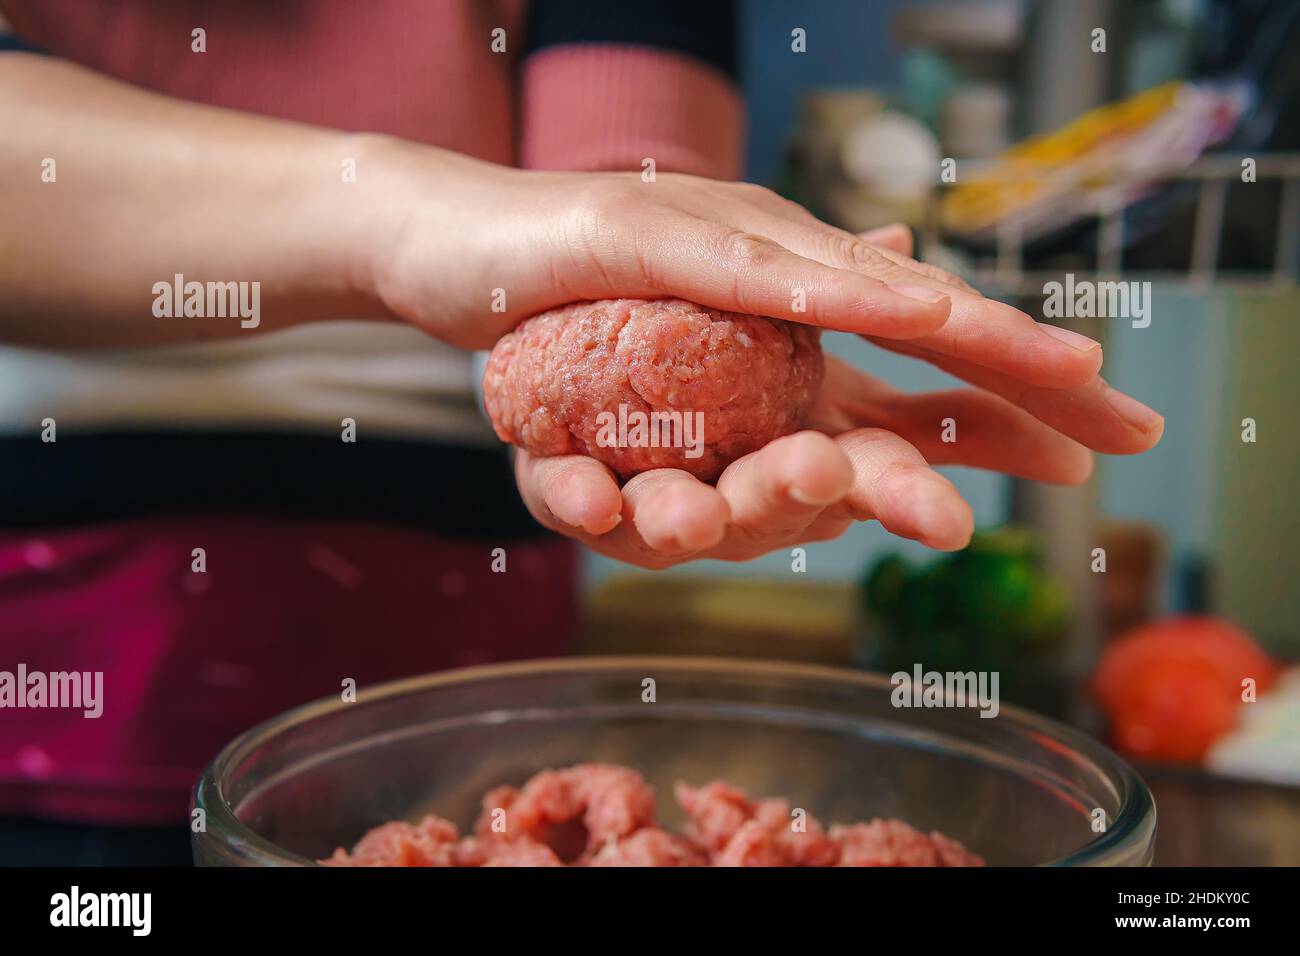 Primo piano di una donna che prepara carne macinata per fare hamburger, la carne è ancora cruda e sta aggiungendo gli ingredienti, bella atmosfera in Foto Stock